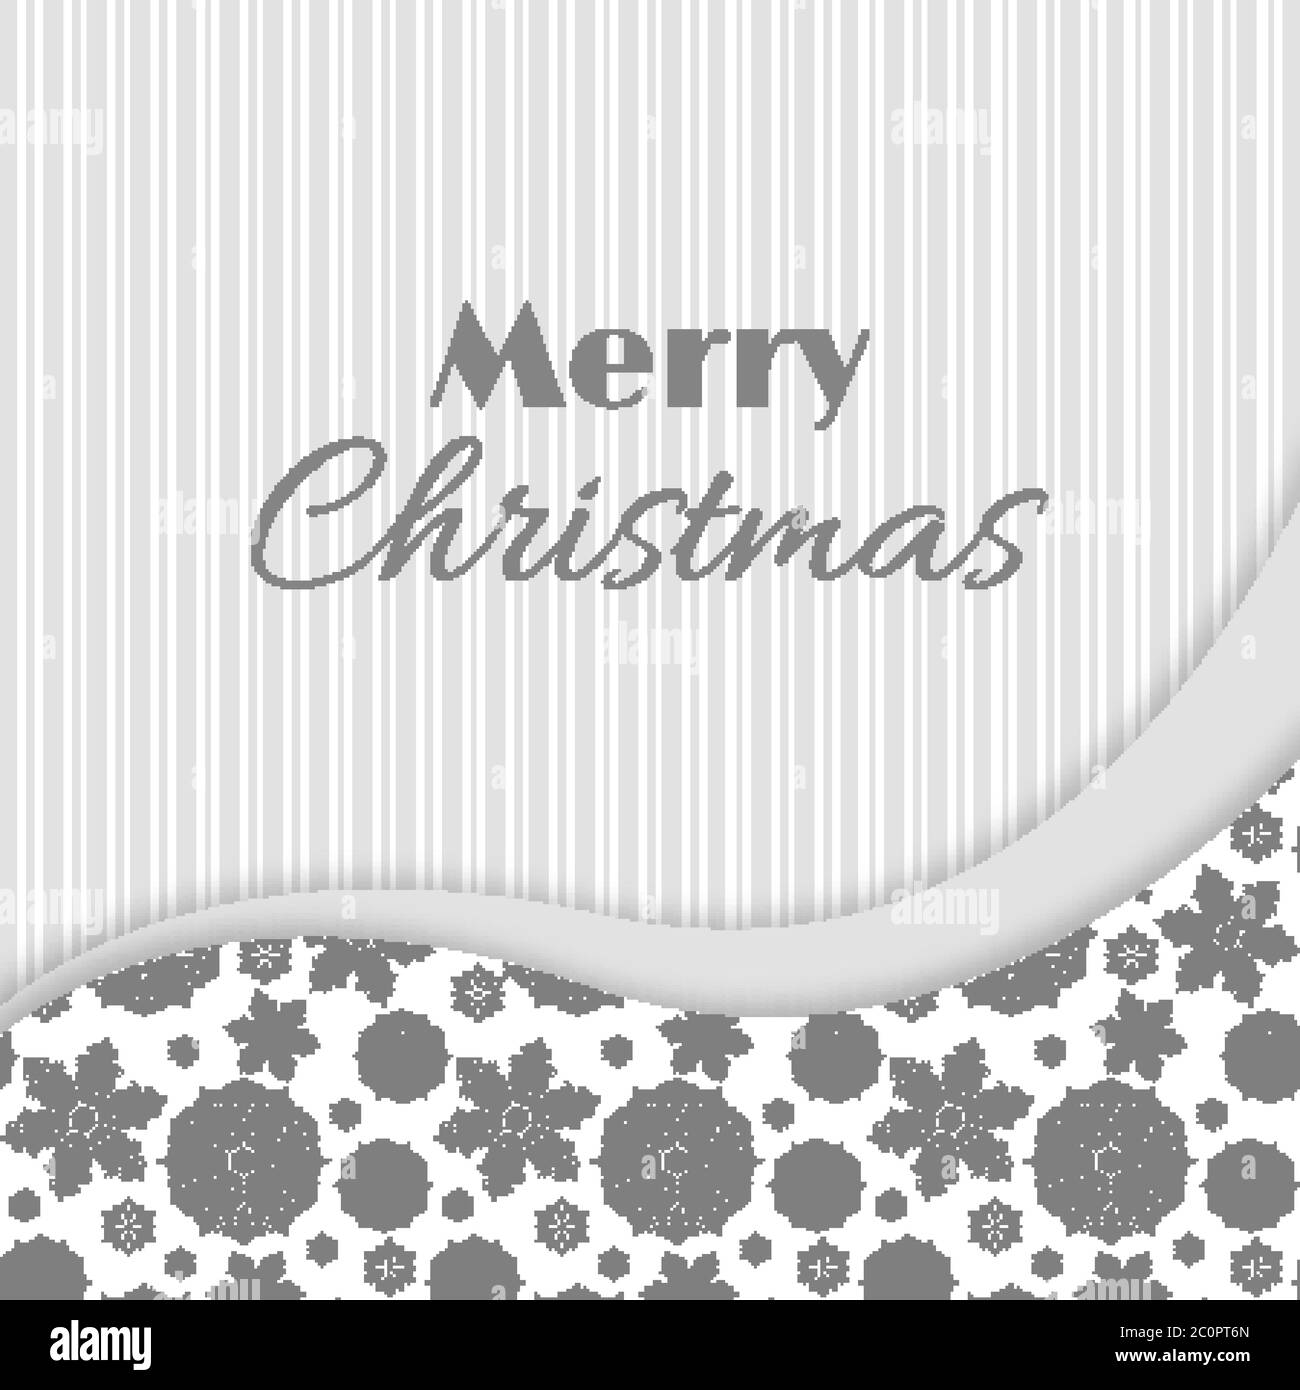 Weihnachten und Neujahr Gruß, Einladungskarte. Weiß und grau, Vintage dekorativen Stil. Vektorgrafik. Stock Vektor